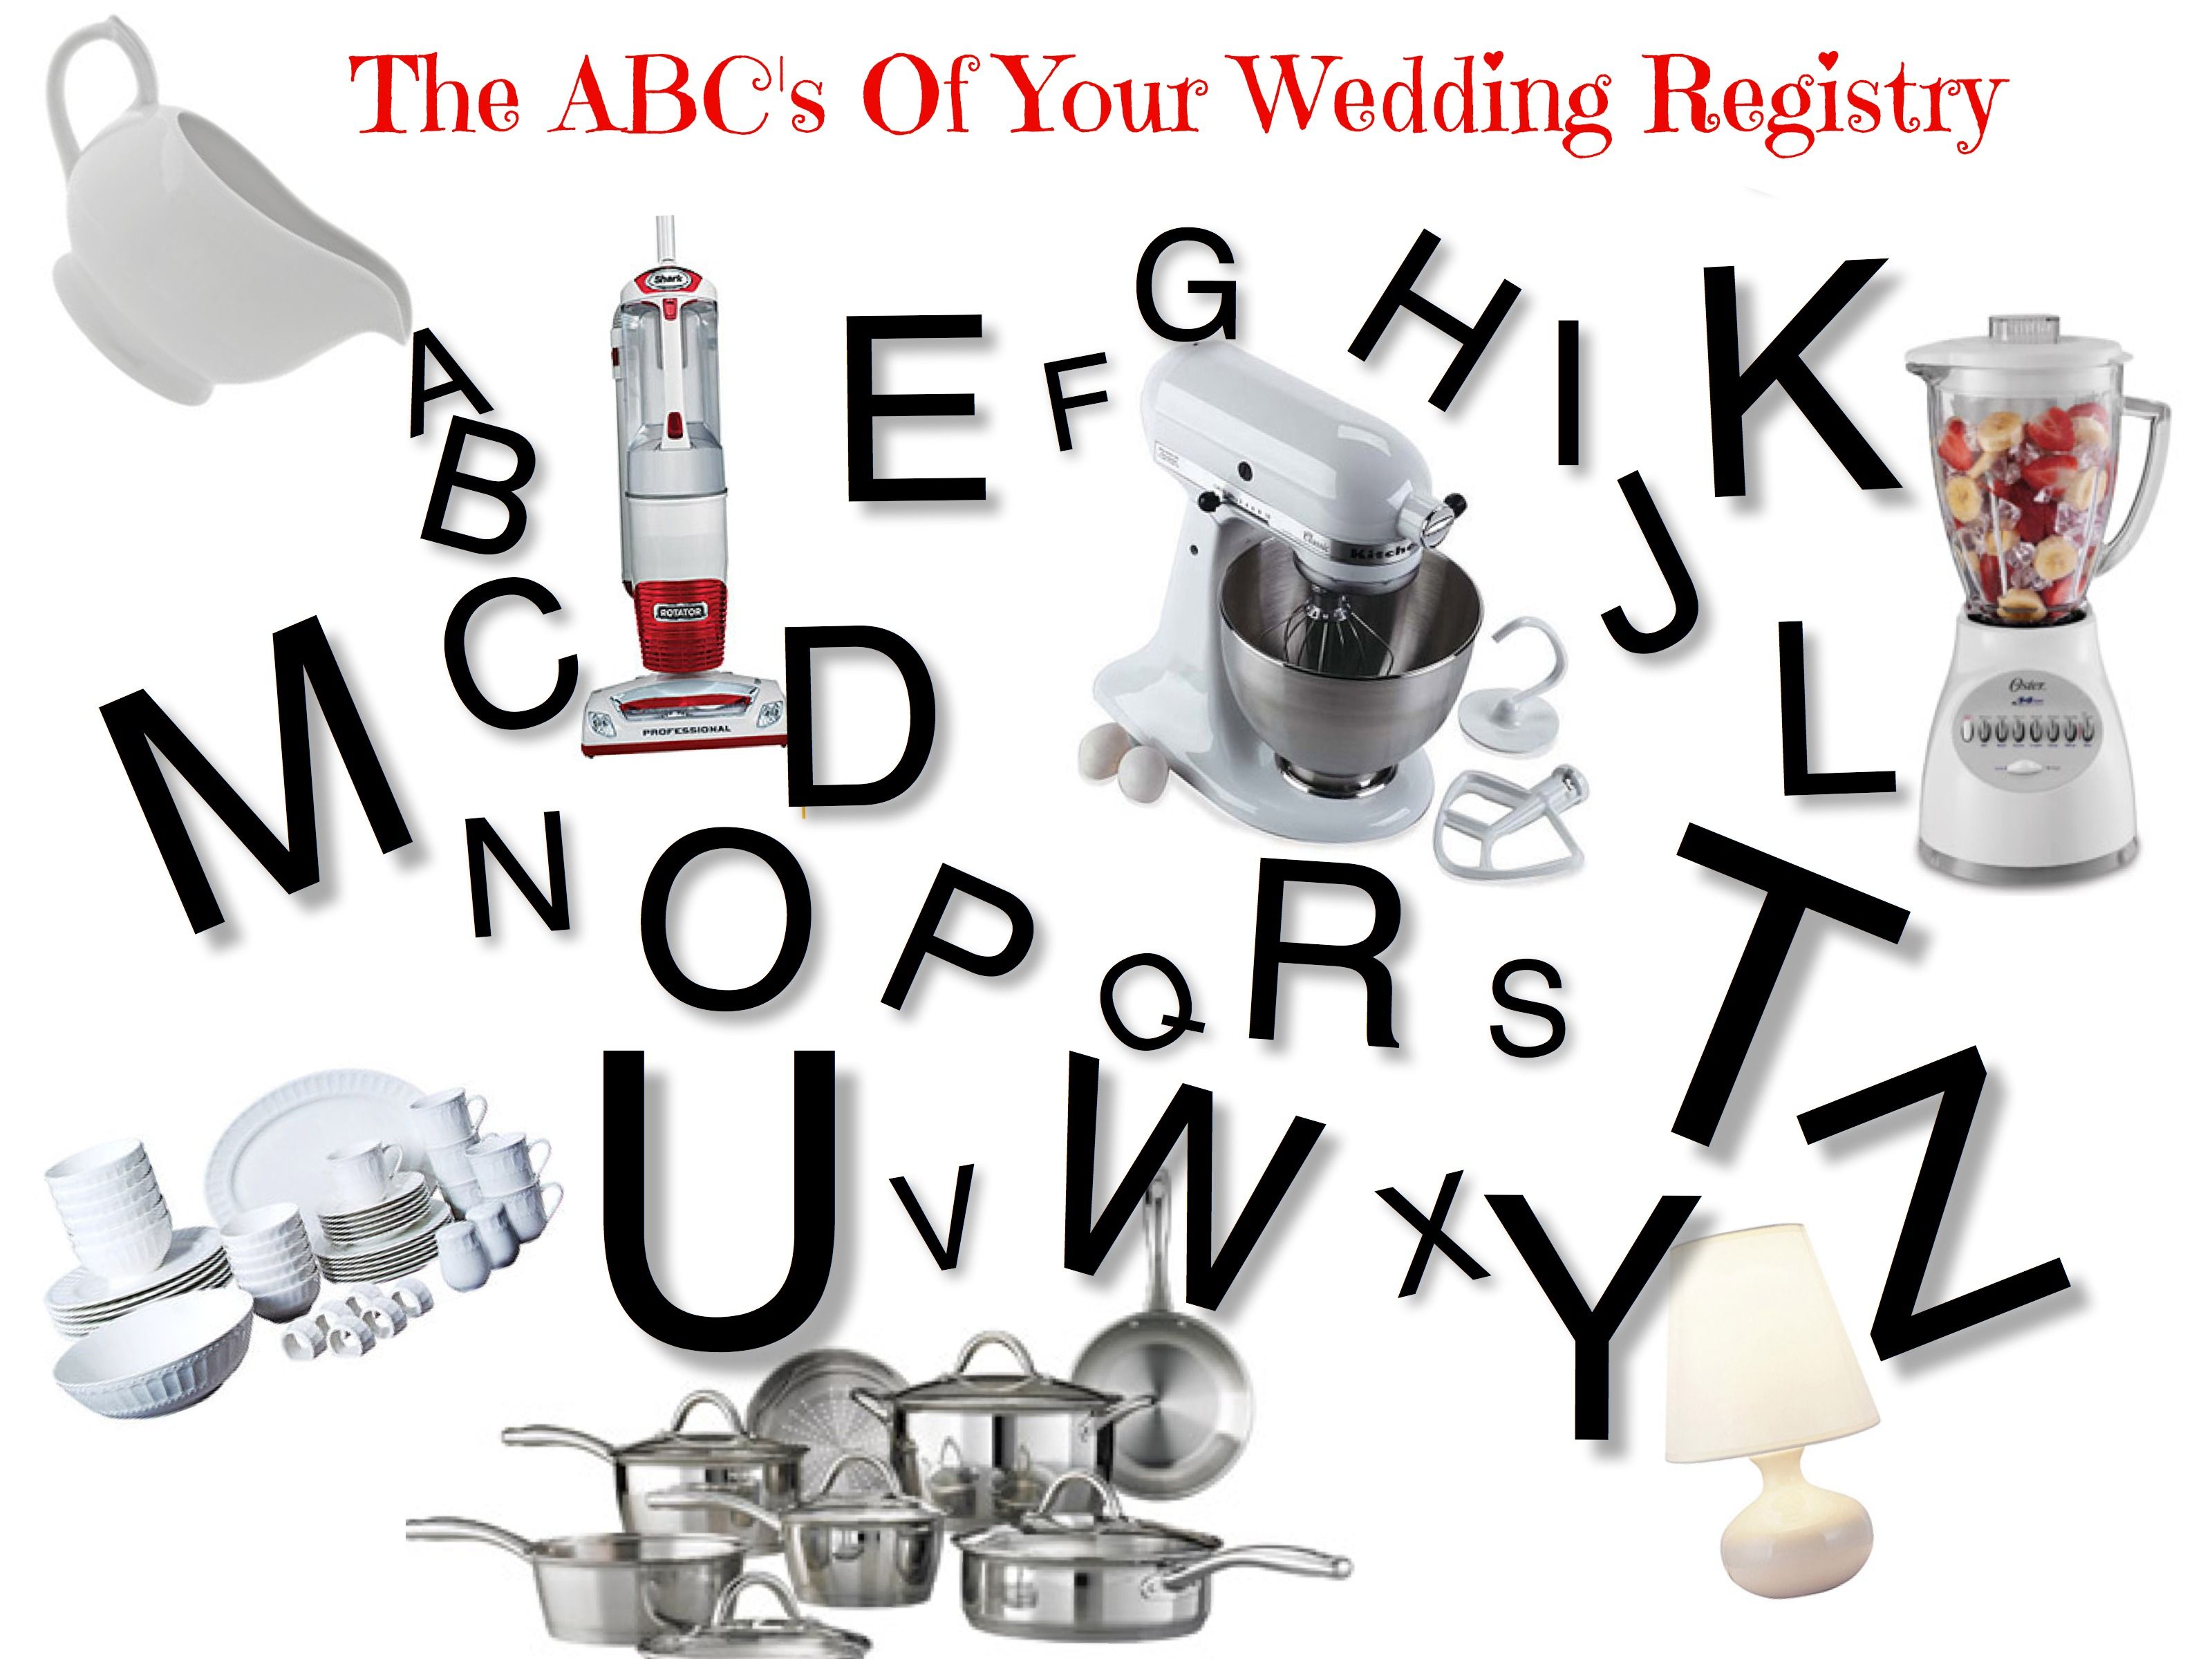 ABC's of wedding registry